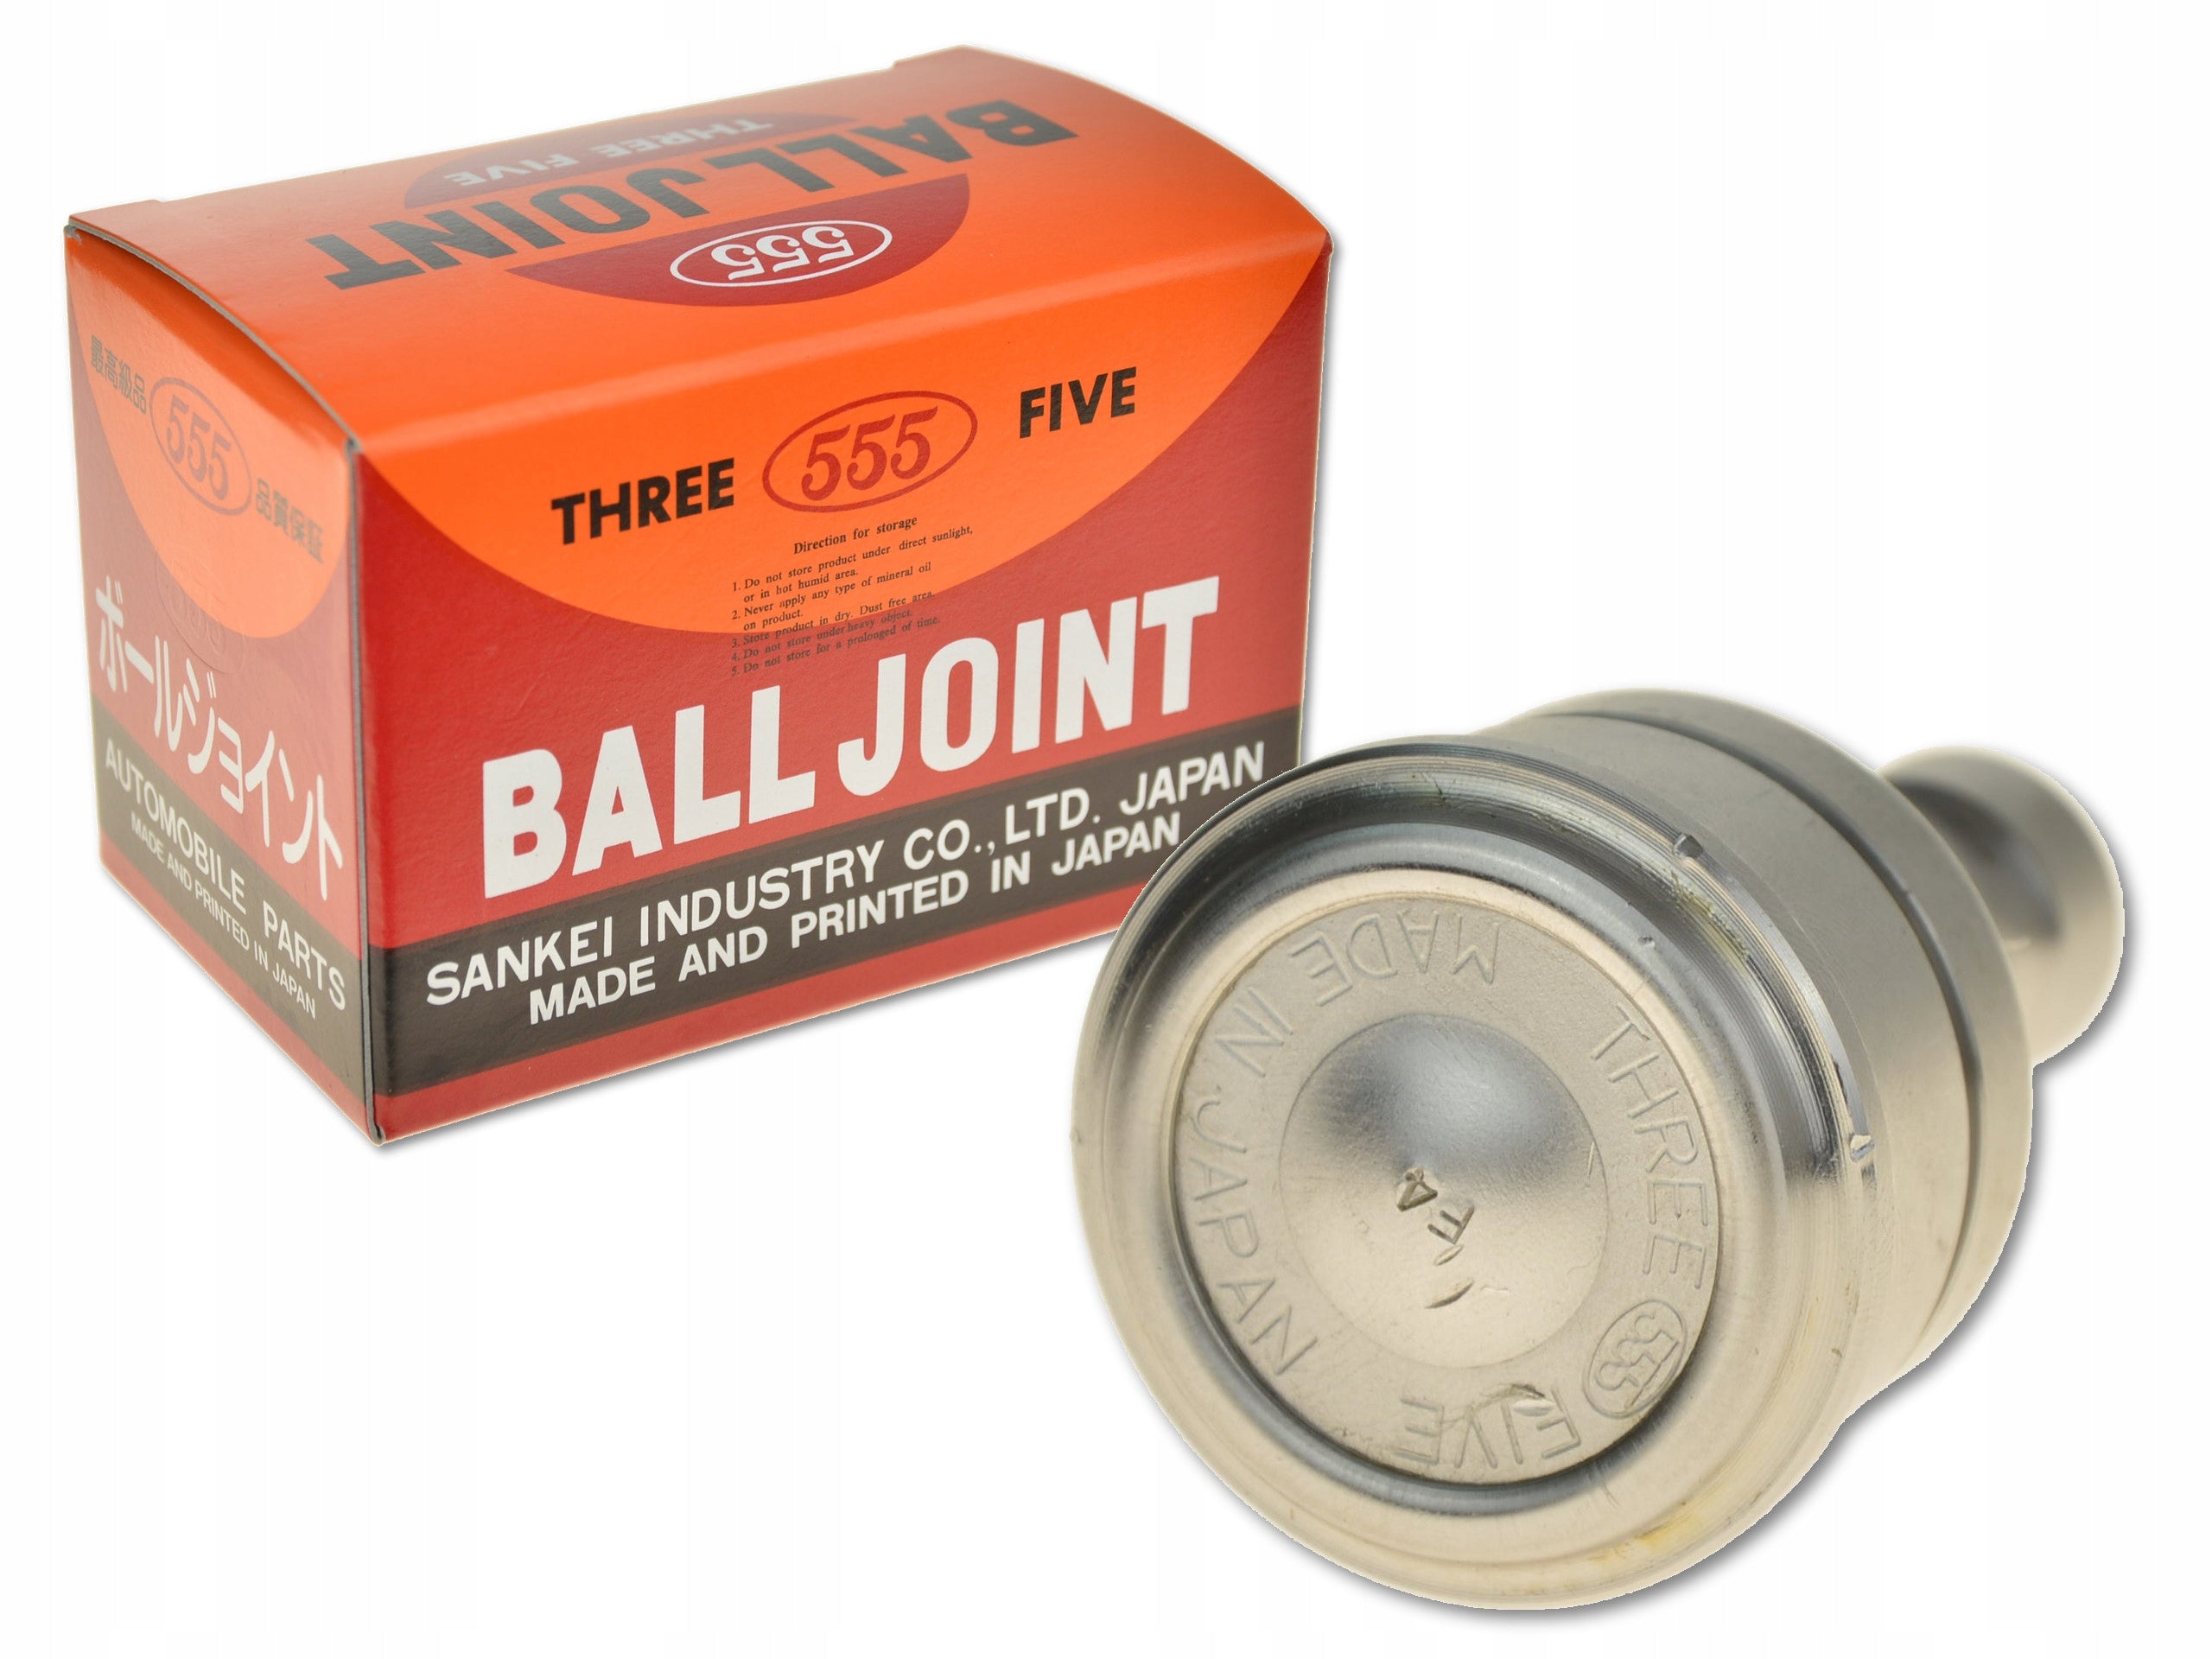 Ball Joint, 555, SB-7902 (008034)